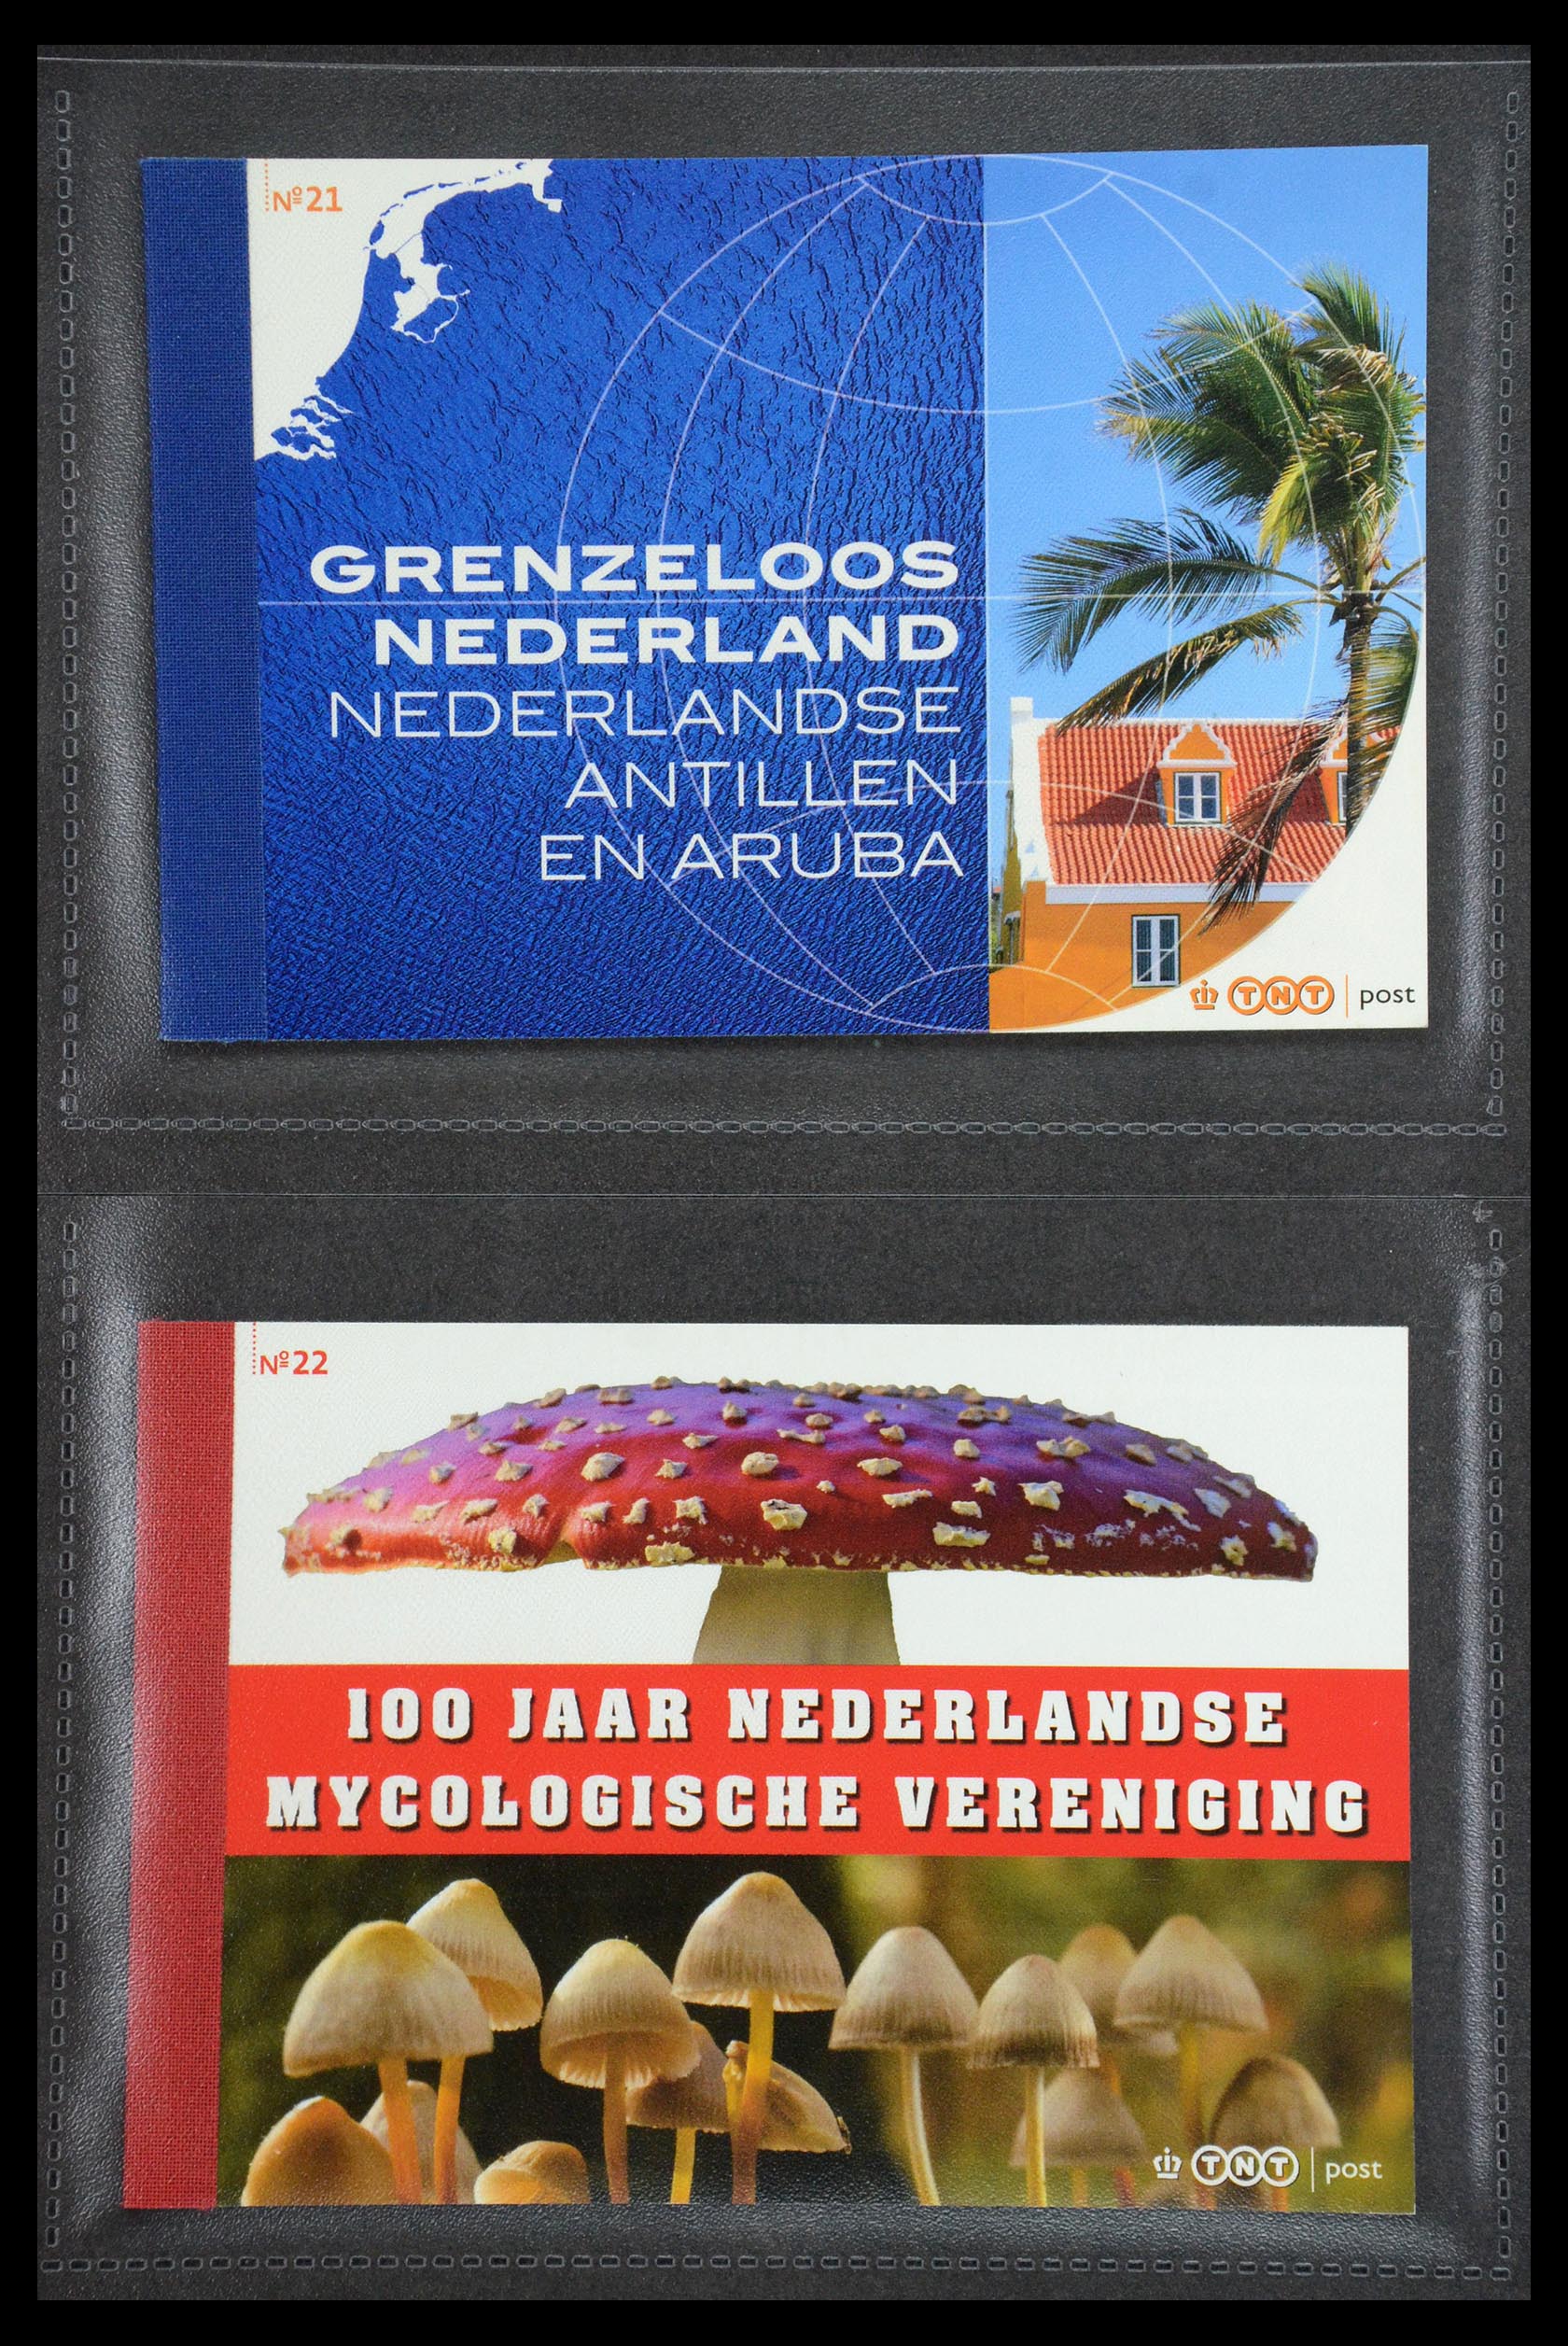 35945 011 - Stamp Collection 35945 Netherlands prestige booklets 2013-2019.